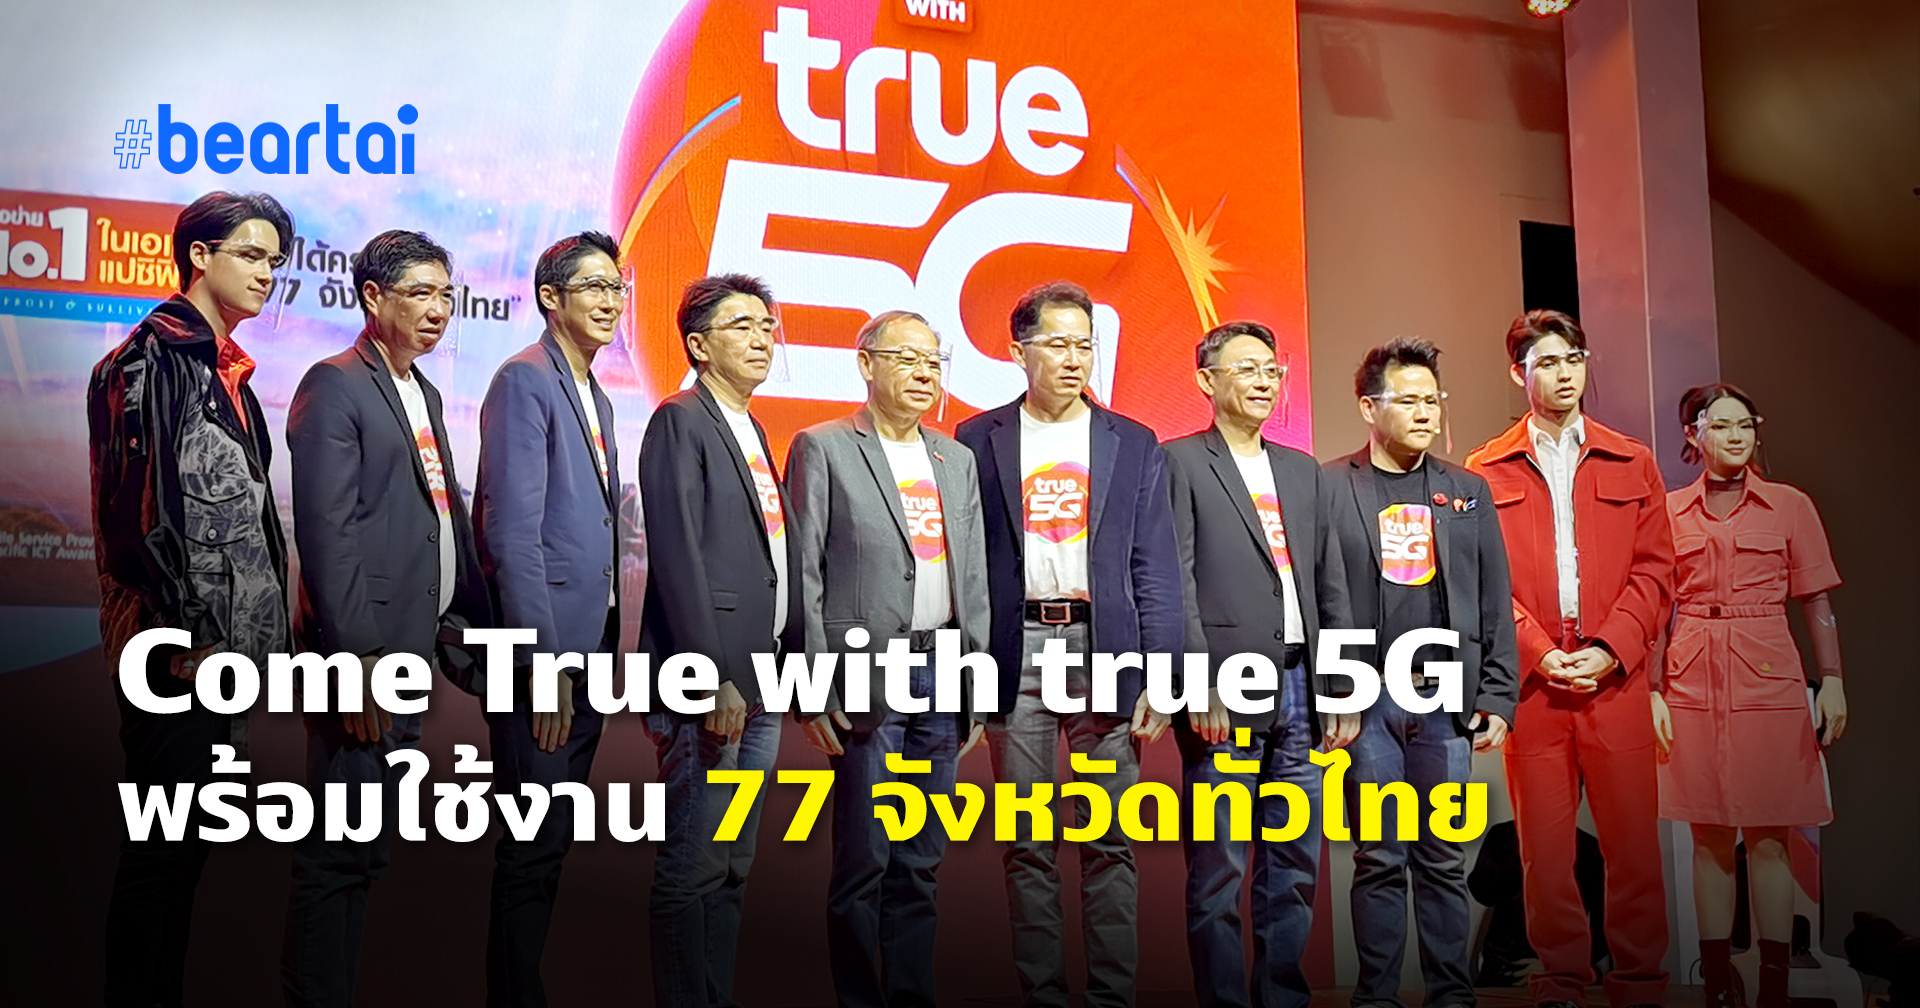 True 5G เข้าเฟส 2 ครอบคลุม 77 จังหวัดทั่วไทยแล้ว